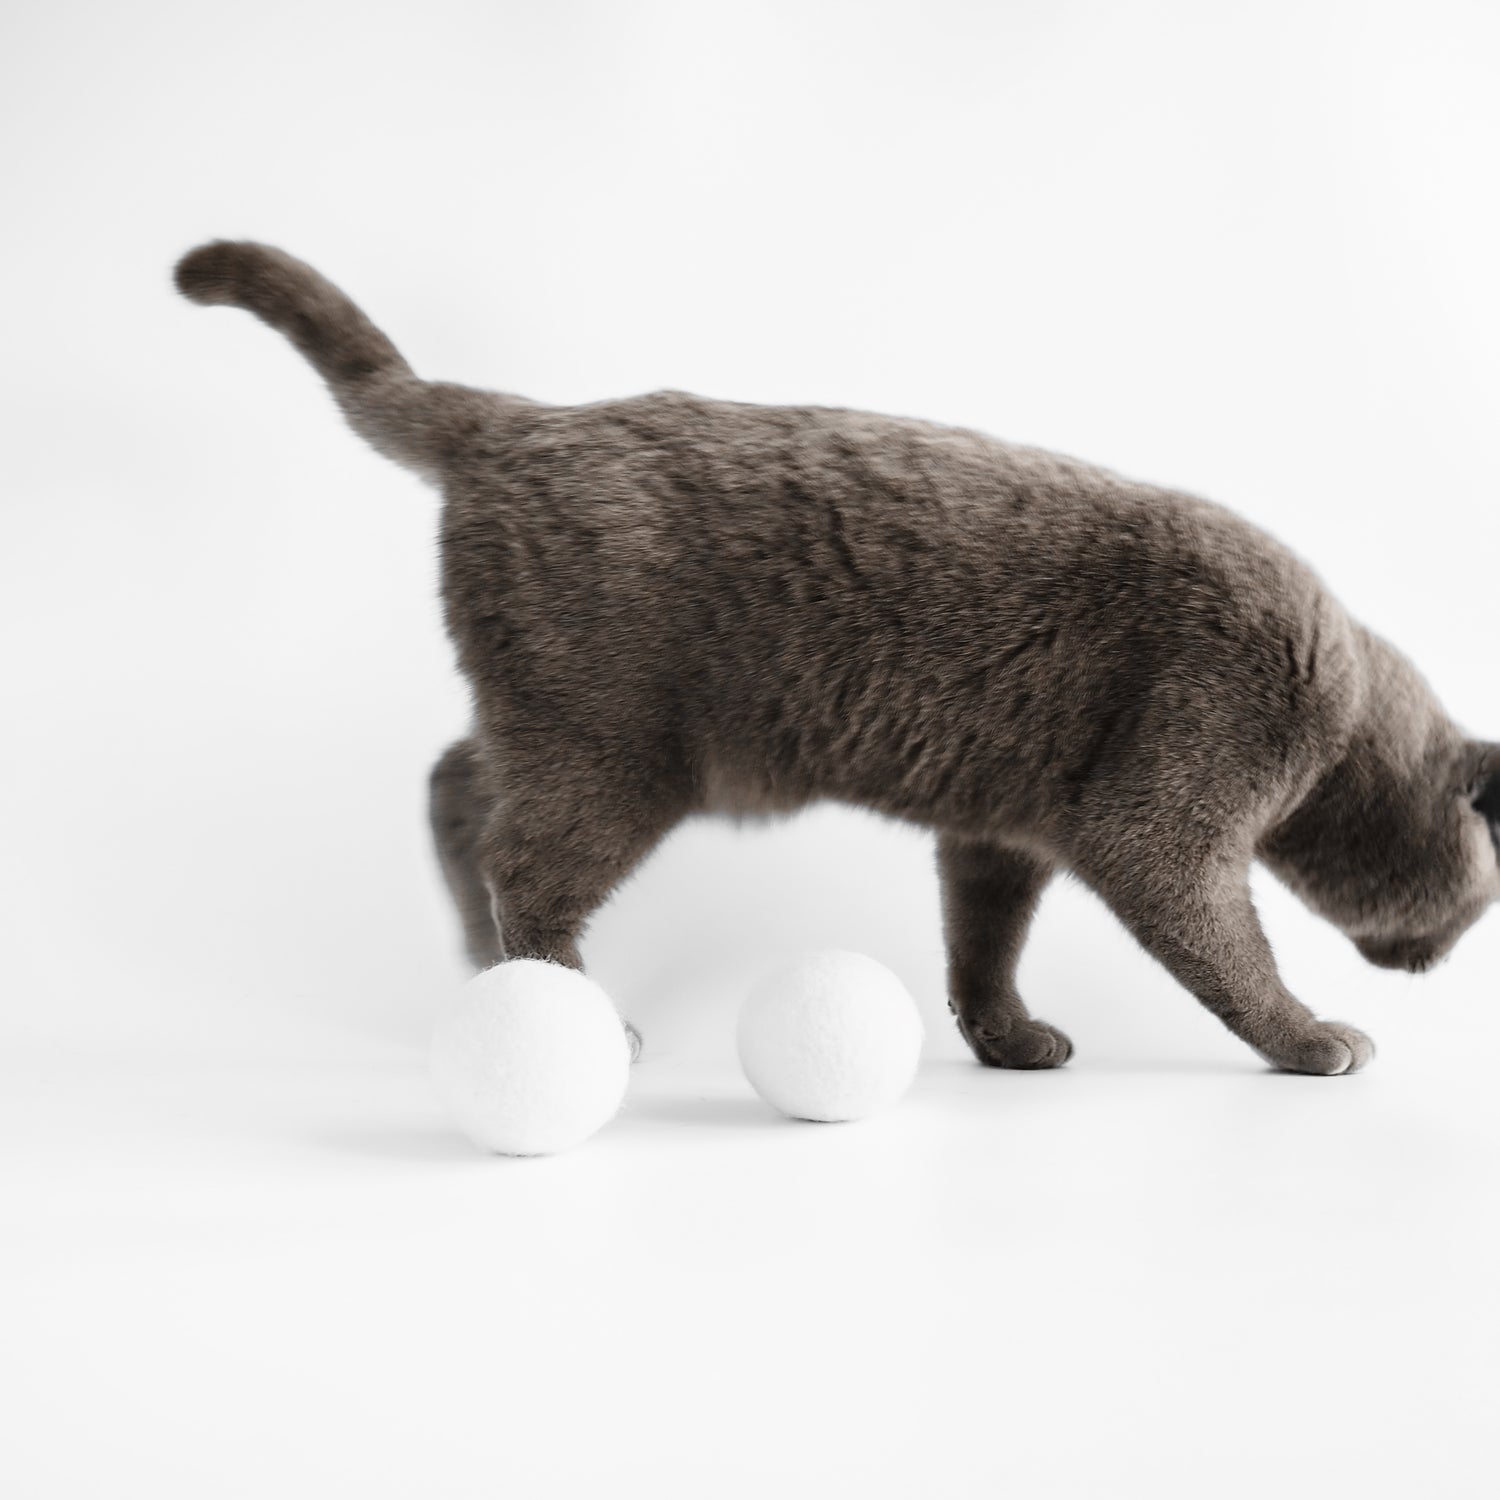 Katze läuft an weißen Bällen für Katzen aus natürlichem Filz vorbei.